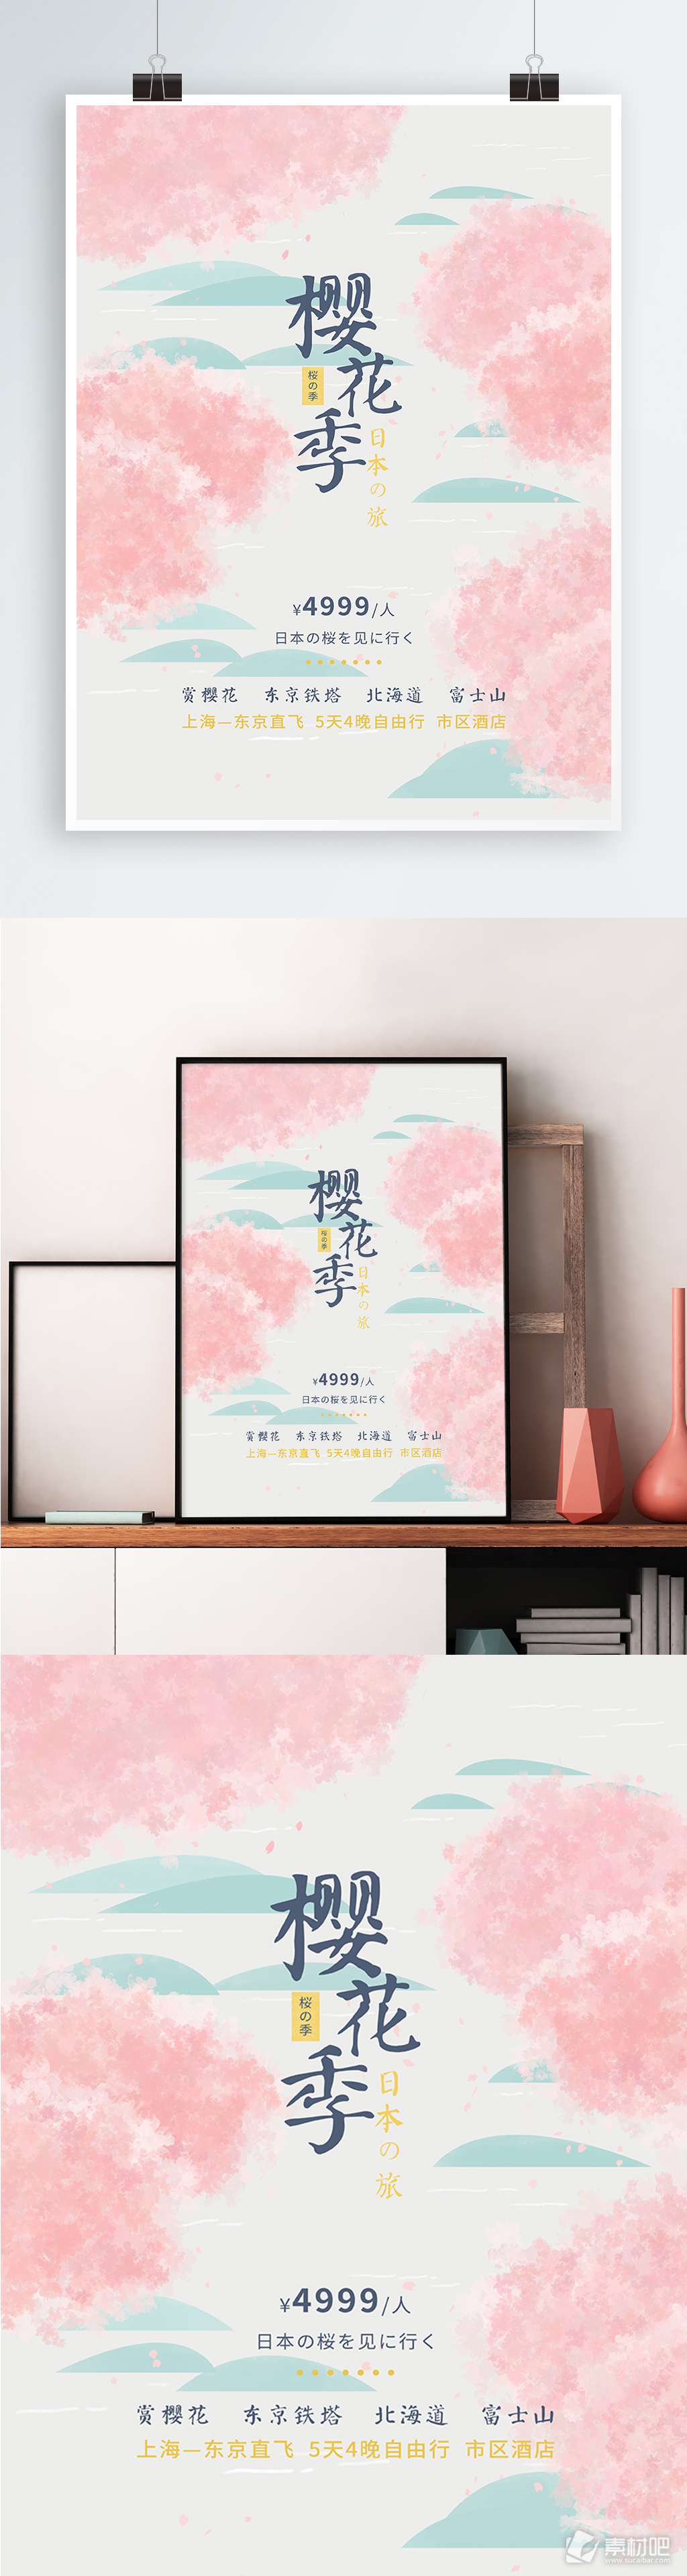 原创插画小清新粉色日本旅游樱花海报展板